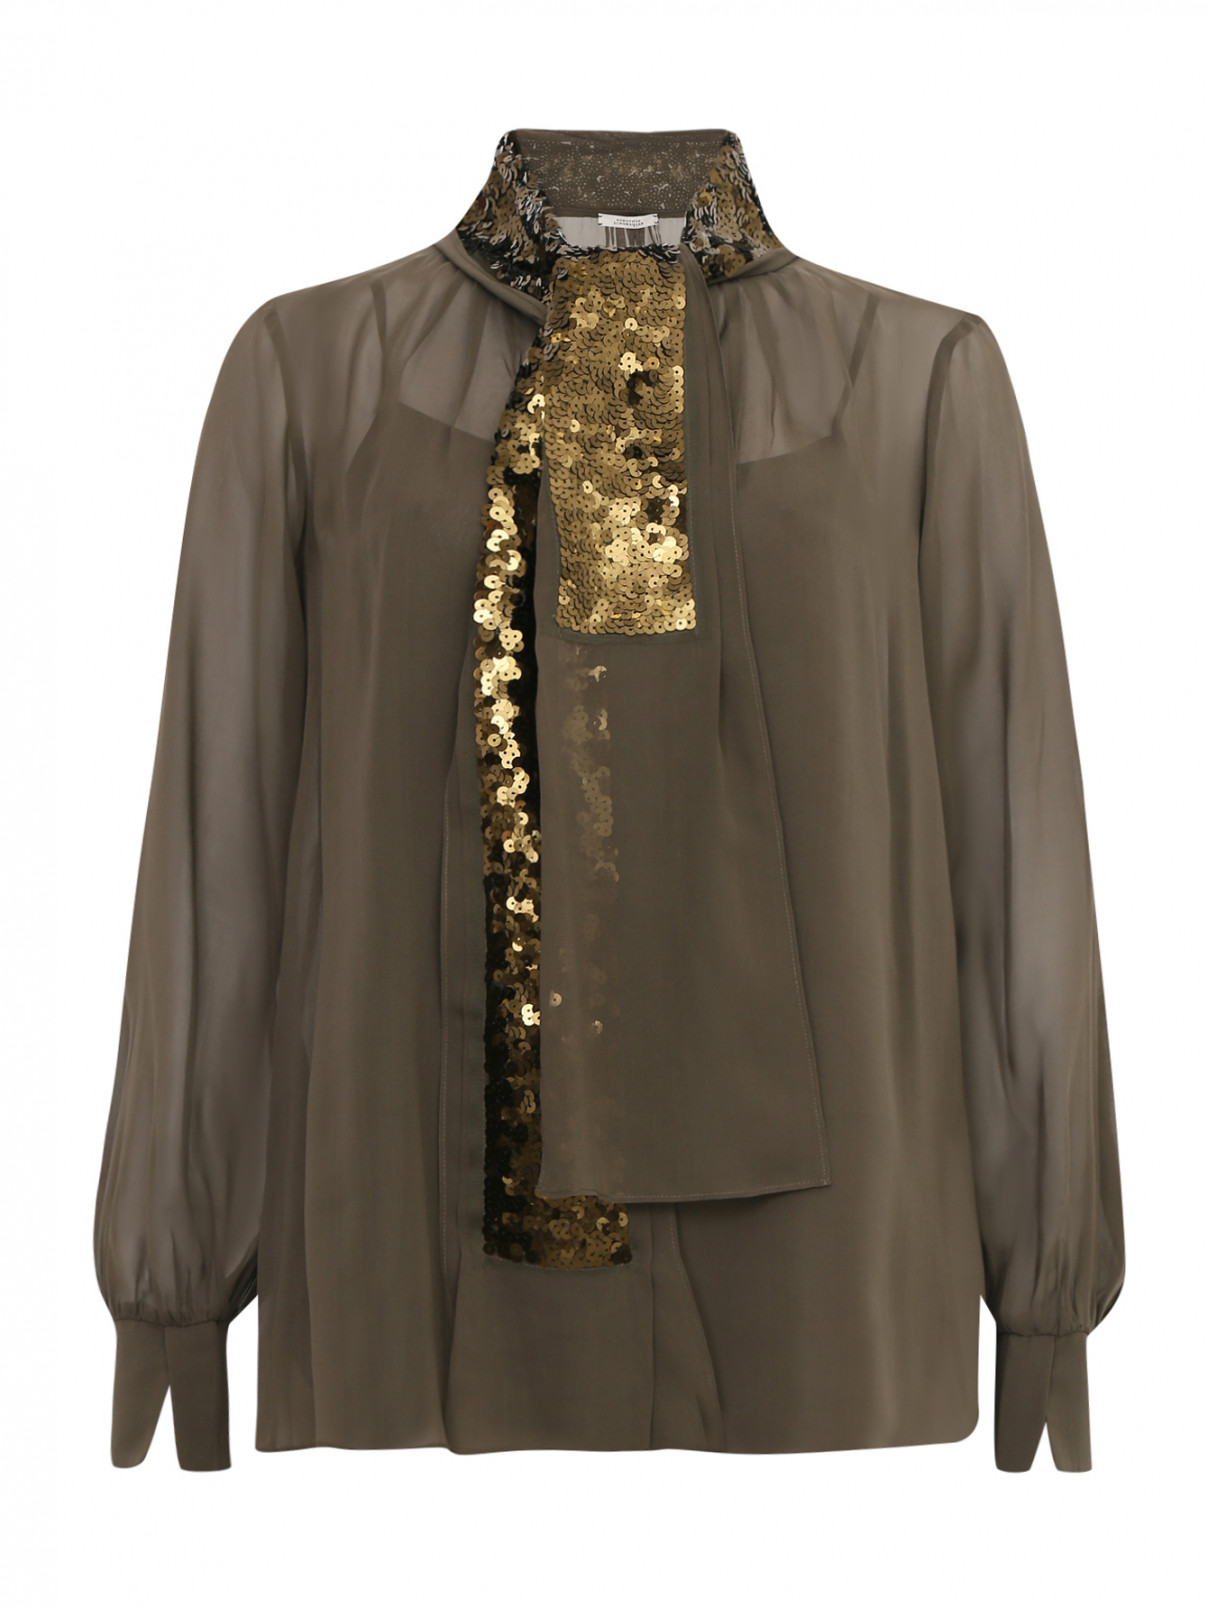 Блуза из шелка декорированная пайетками Dorothee Schumacher  –  Общий вид  – Цвет:  Зеленый